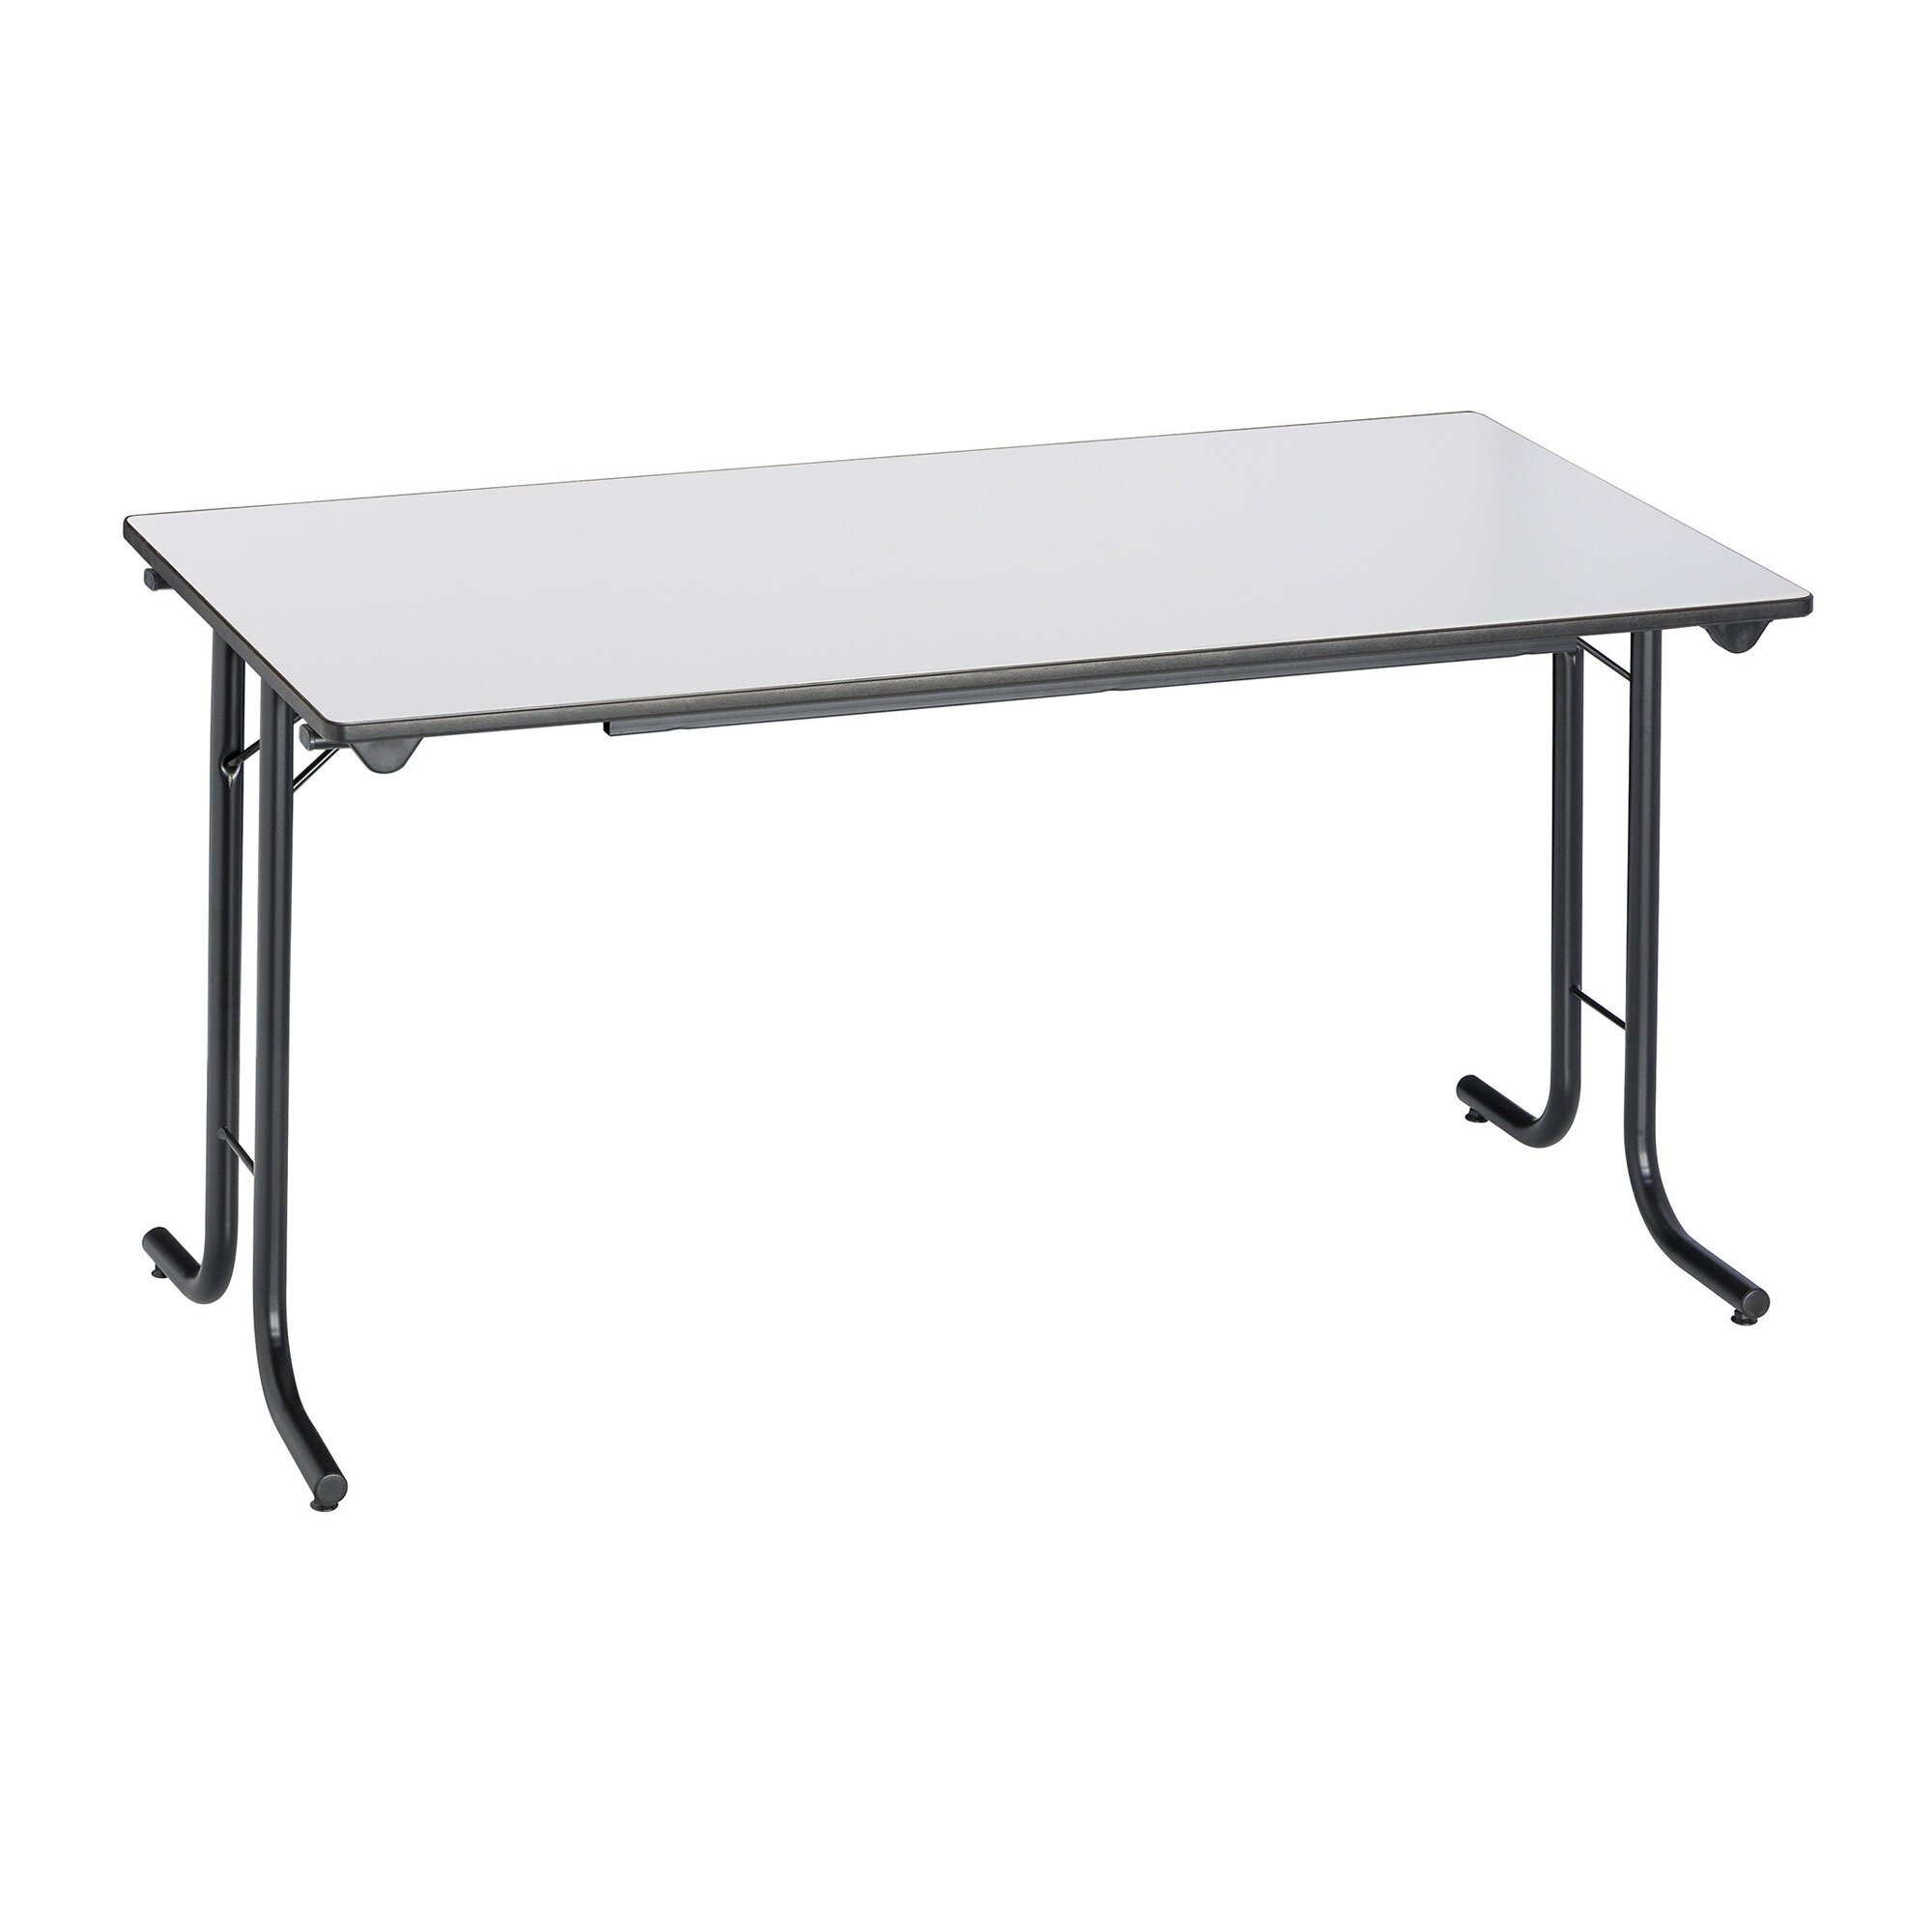 Table pliante modulaire classique - plateau profondeur 70cm